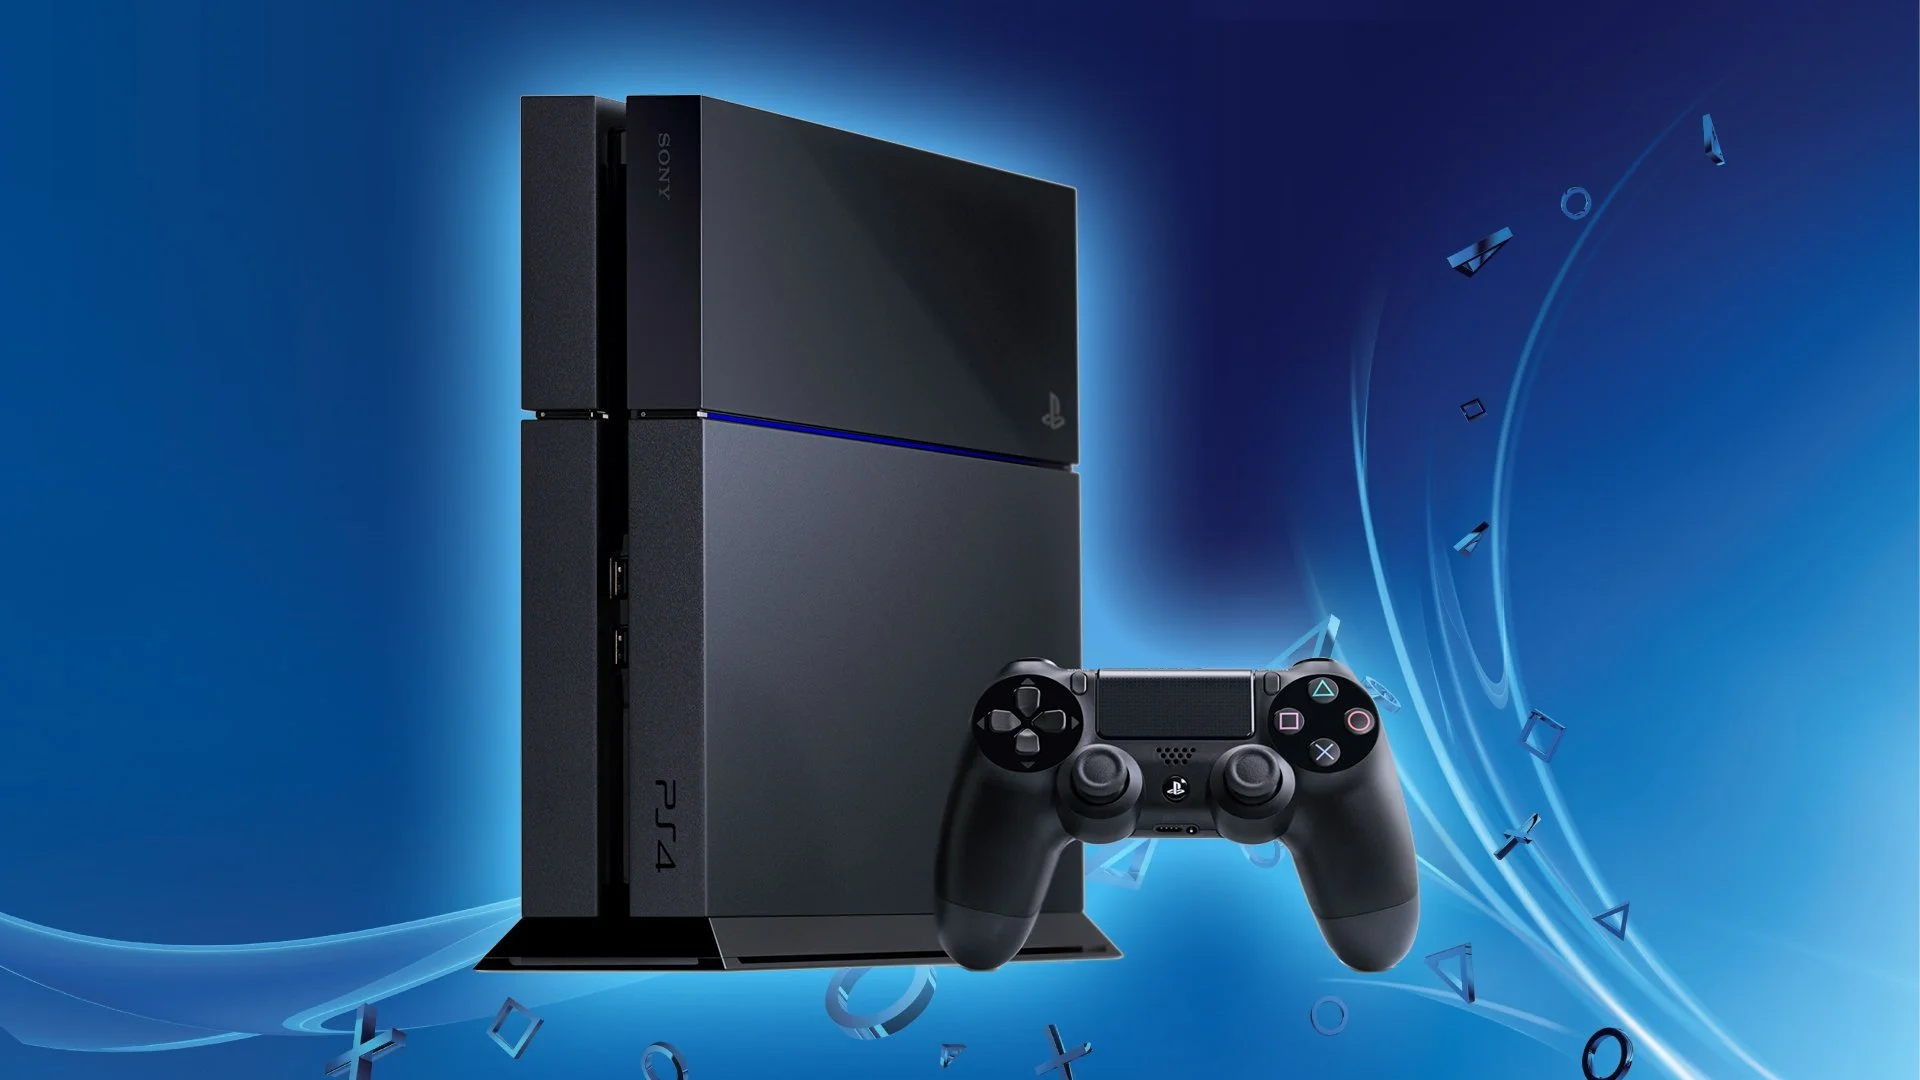 В США Sony снизит стоимость стандартной модели PlayStation 4 на $50 - фото 1